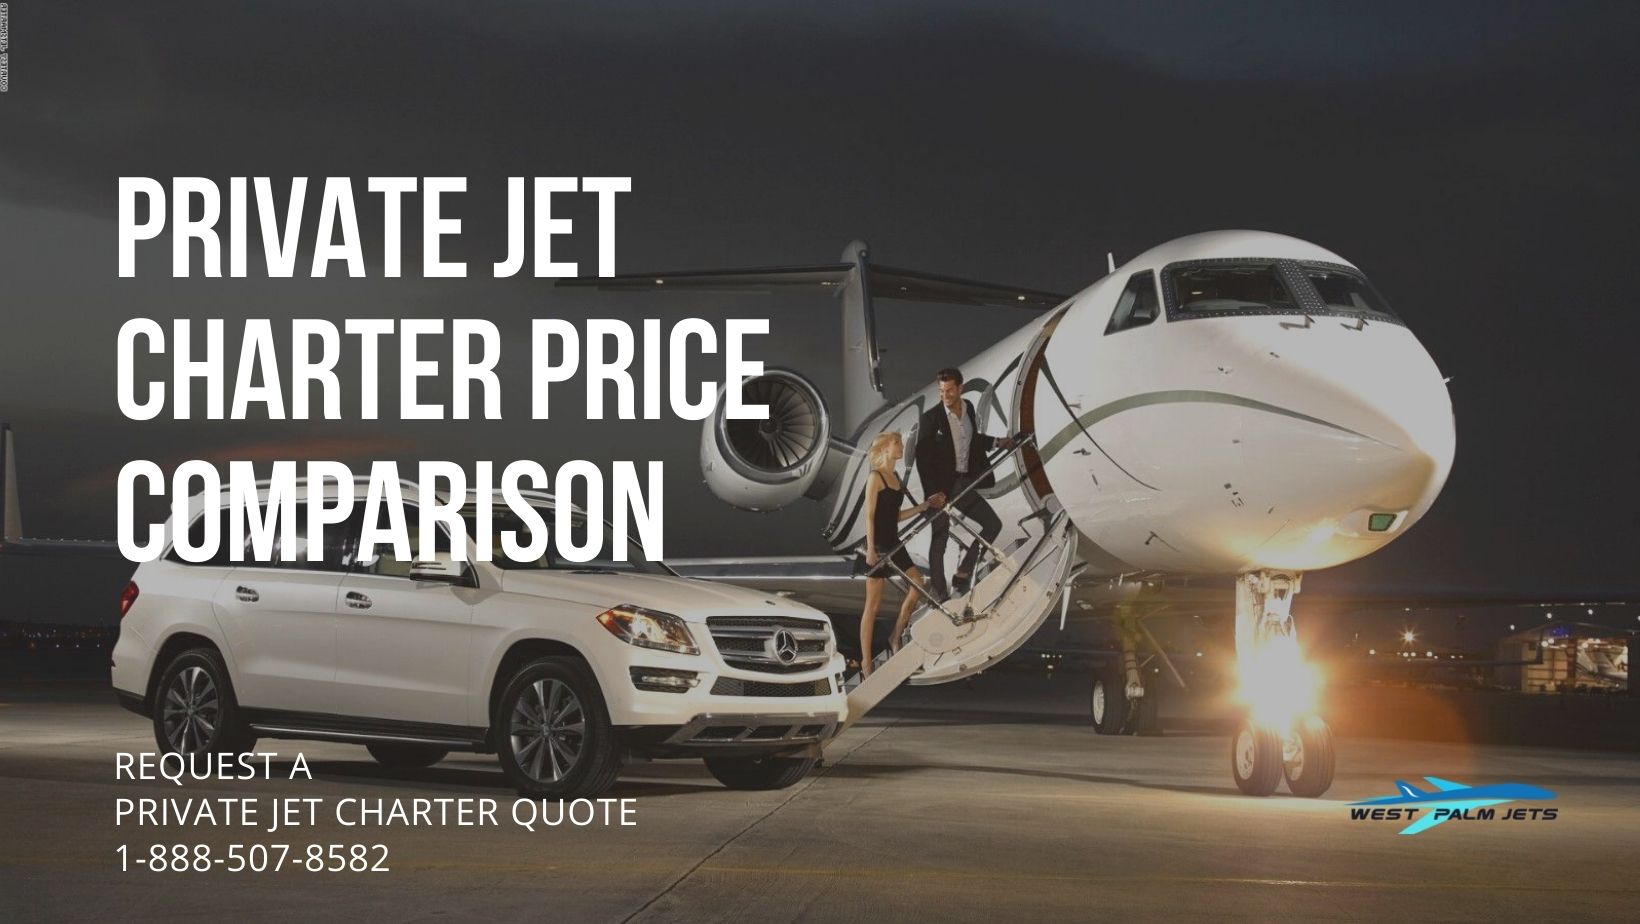 Private Jet Charter Price Comparison